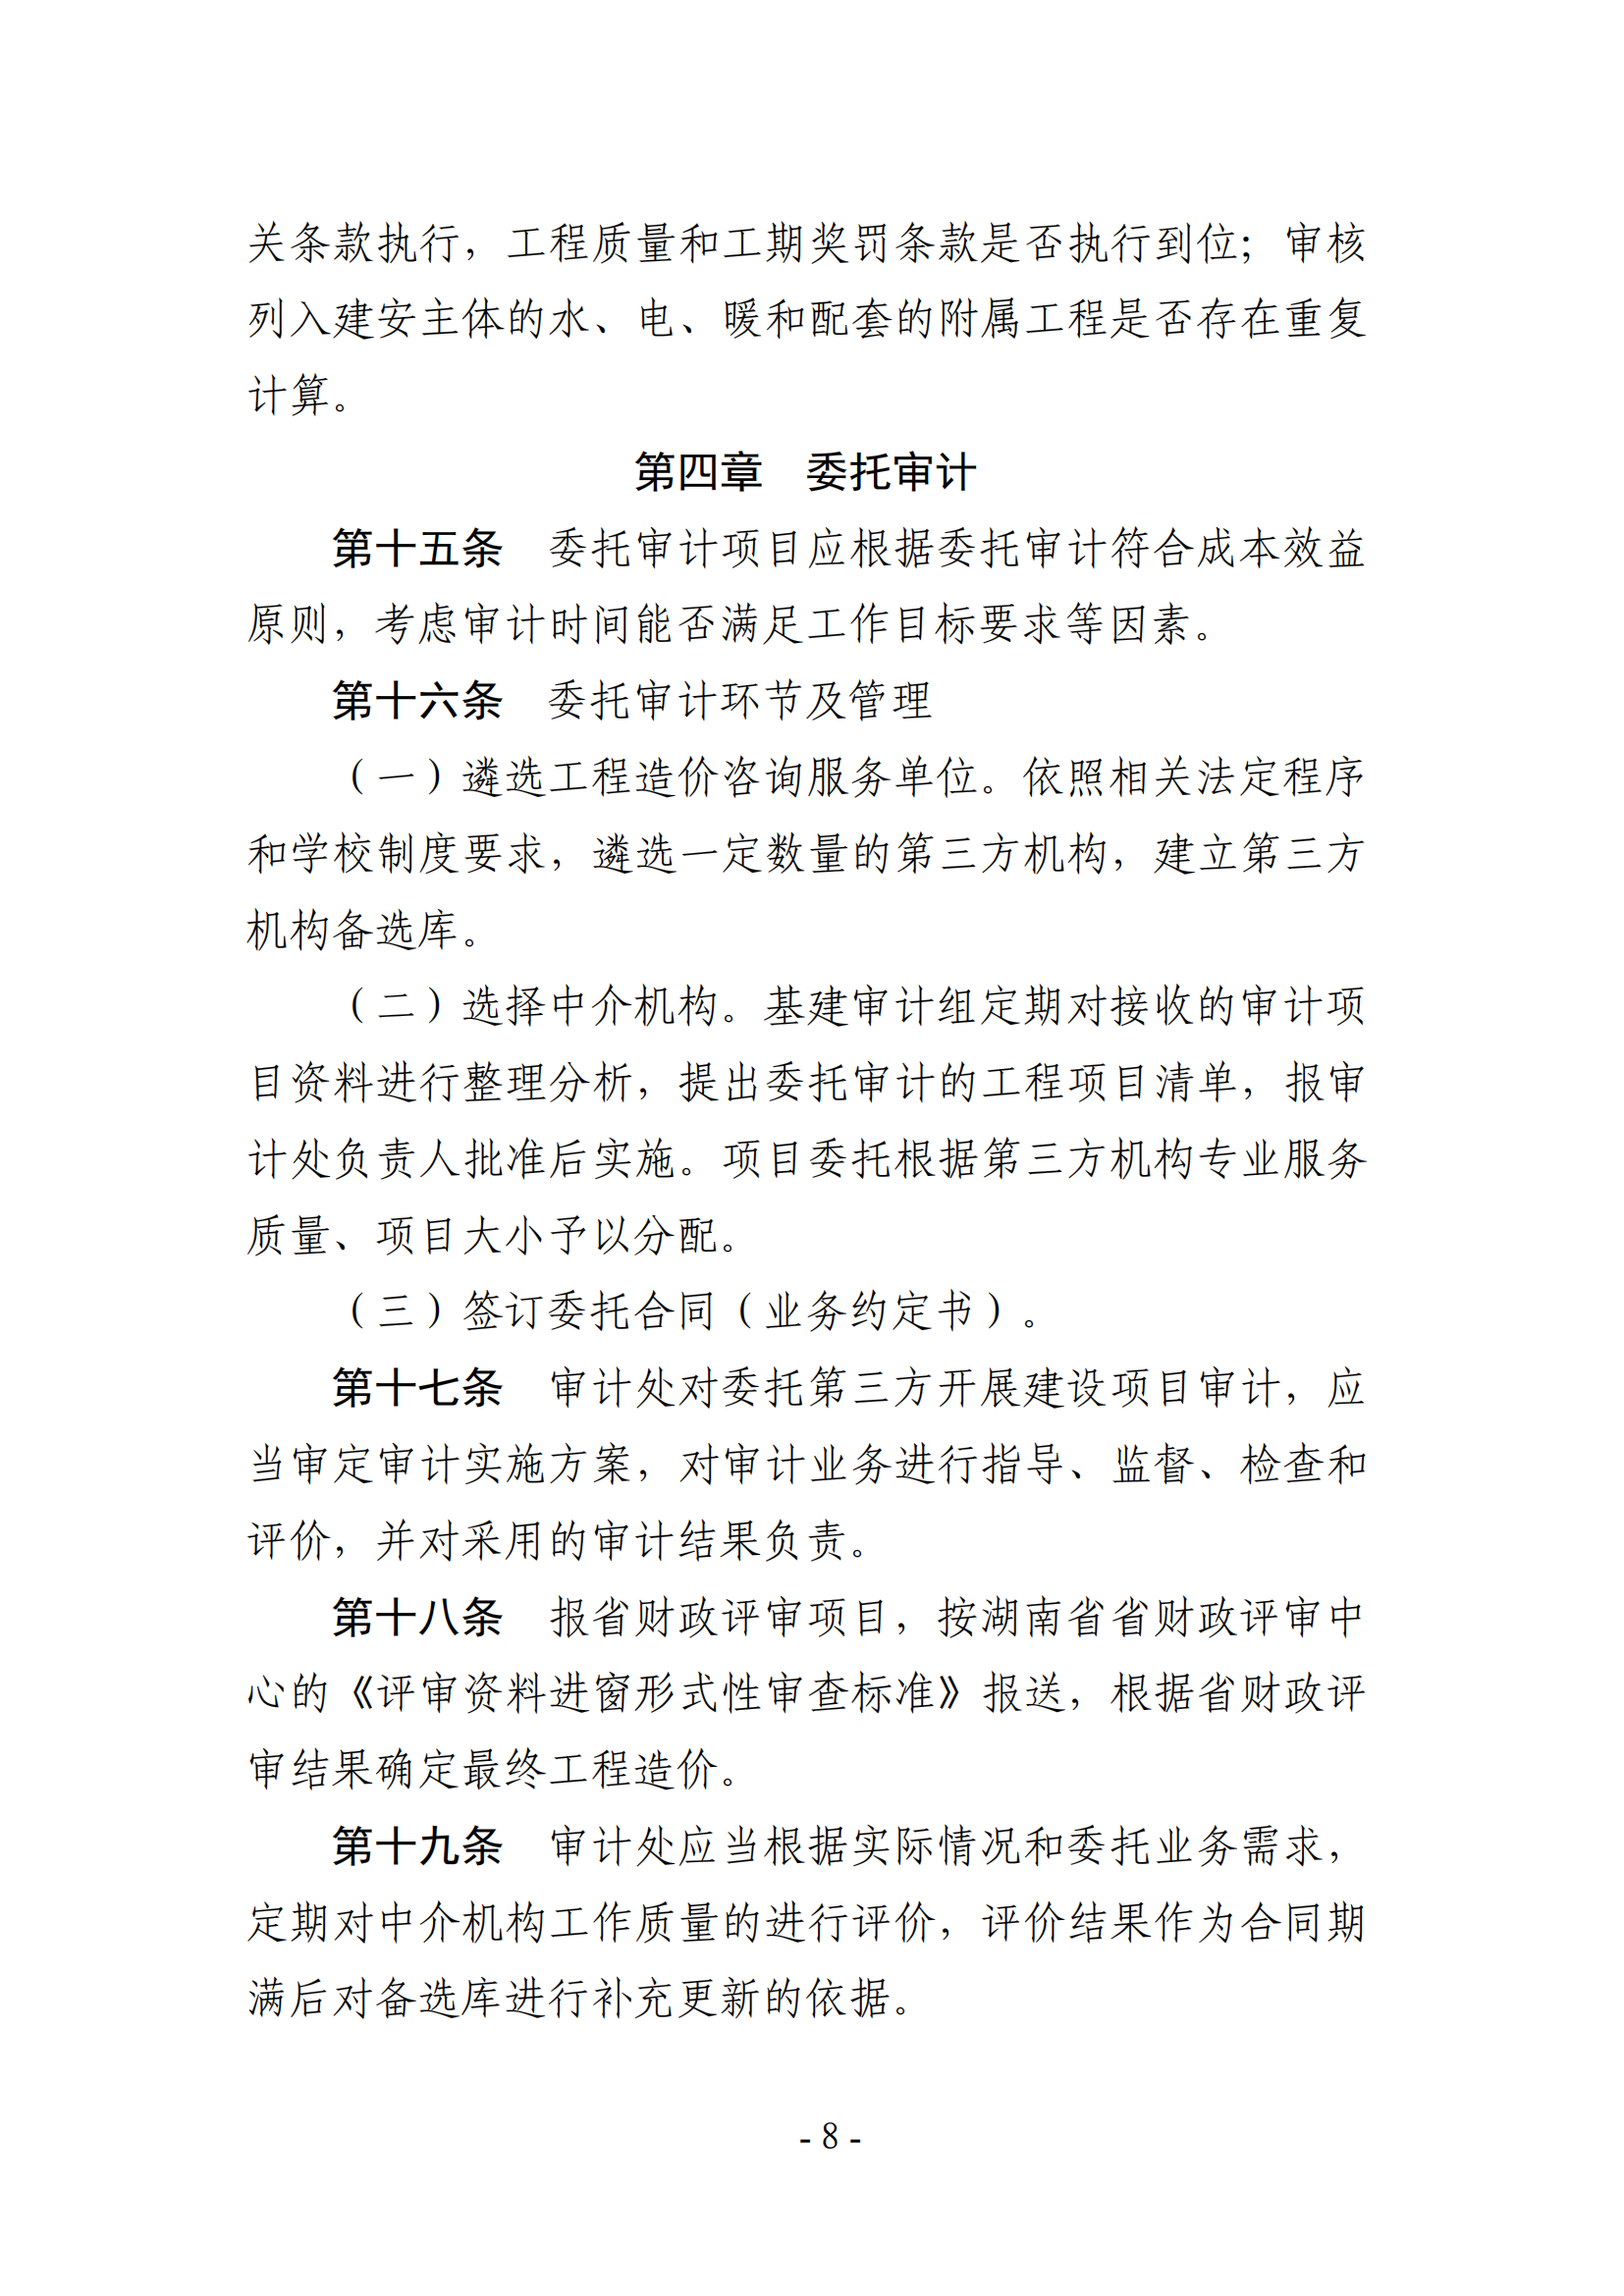 关于印发《湖南农业大学基建、修缮工程项目审计实施办法》的通知-正文_07.png